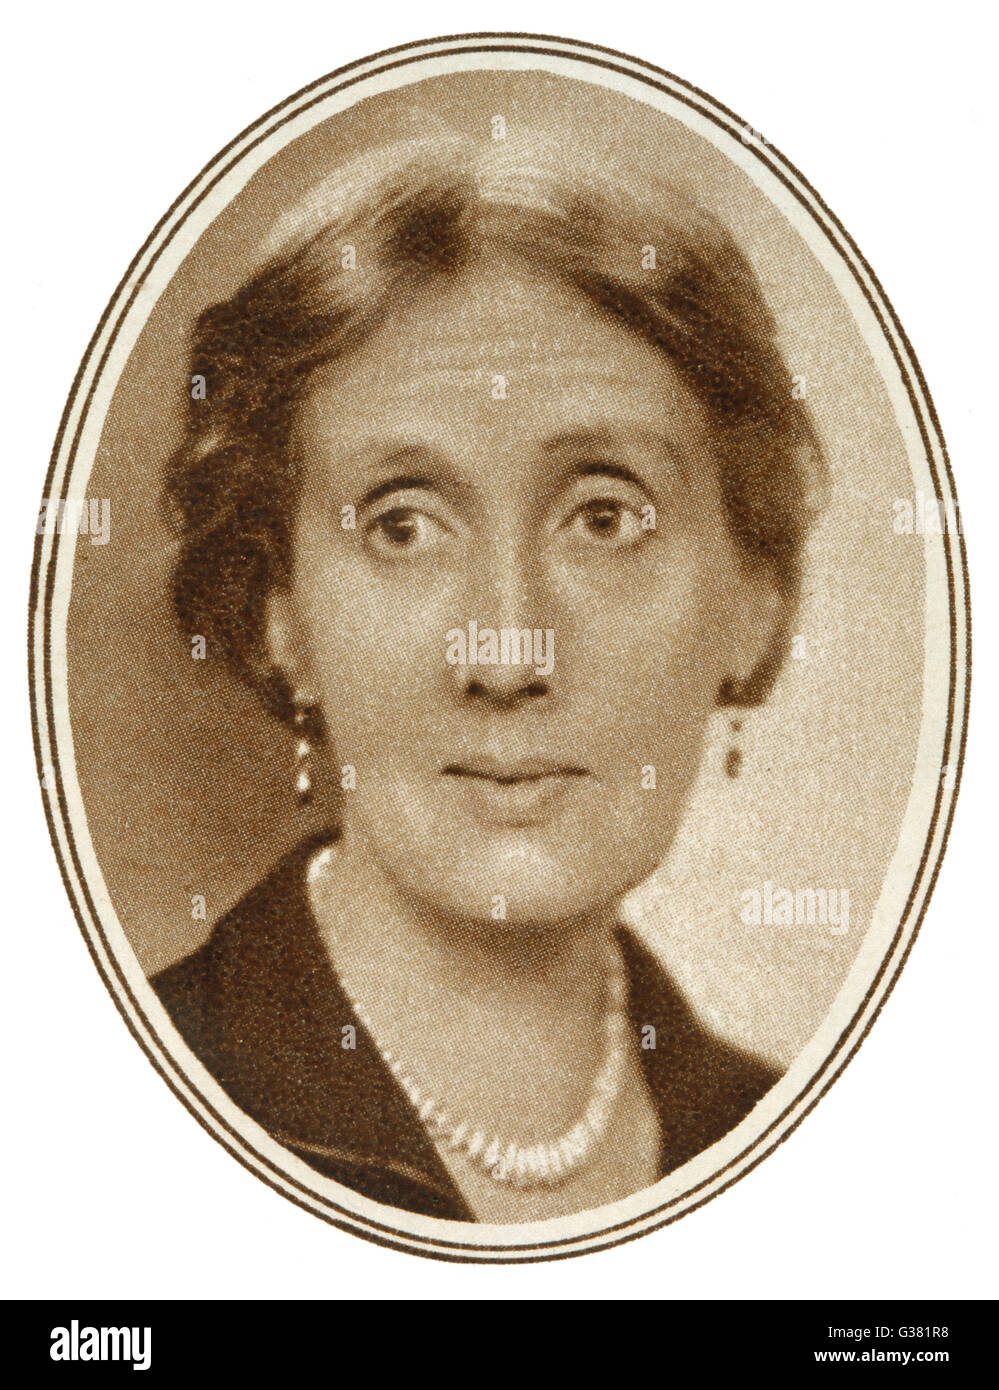 VIRGINIA WOOLF romancier anglais 1882 - 1941 Banque D'Images